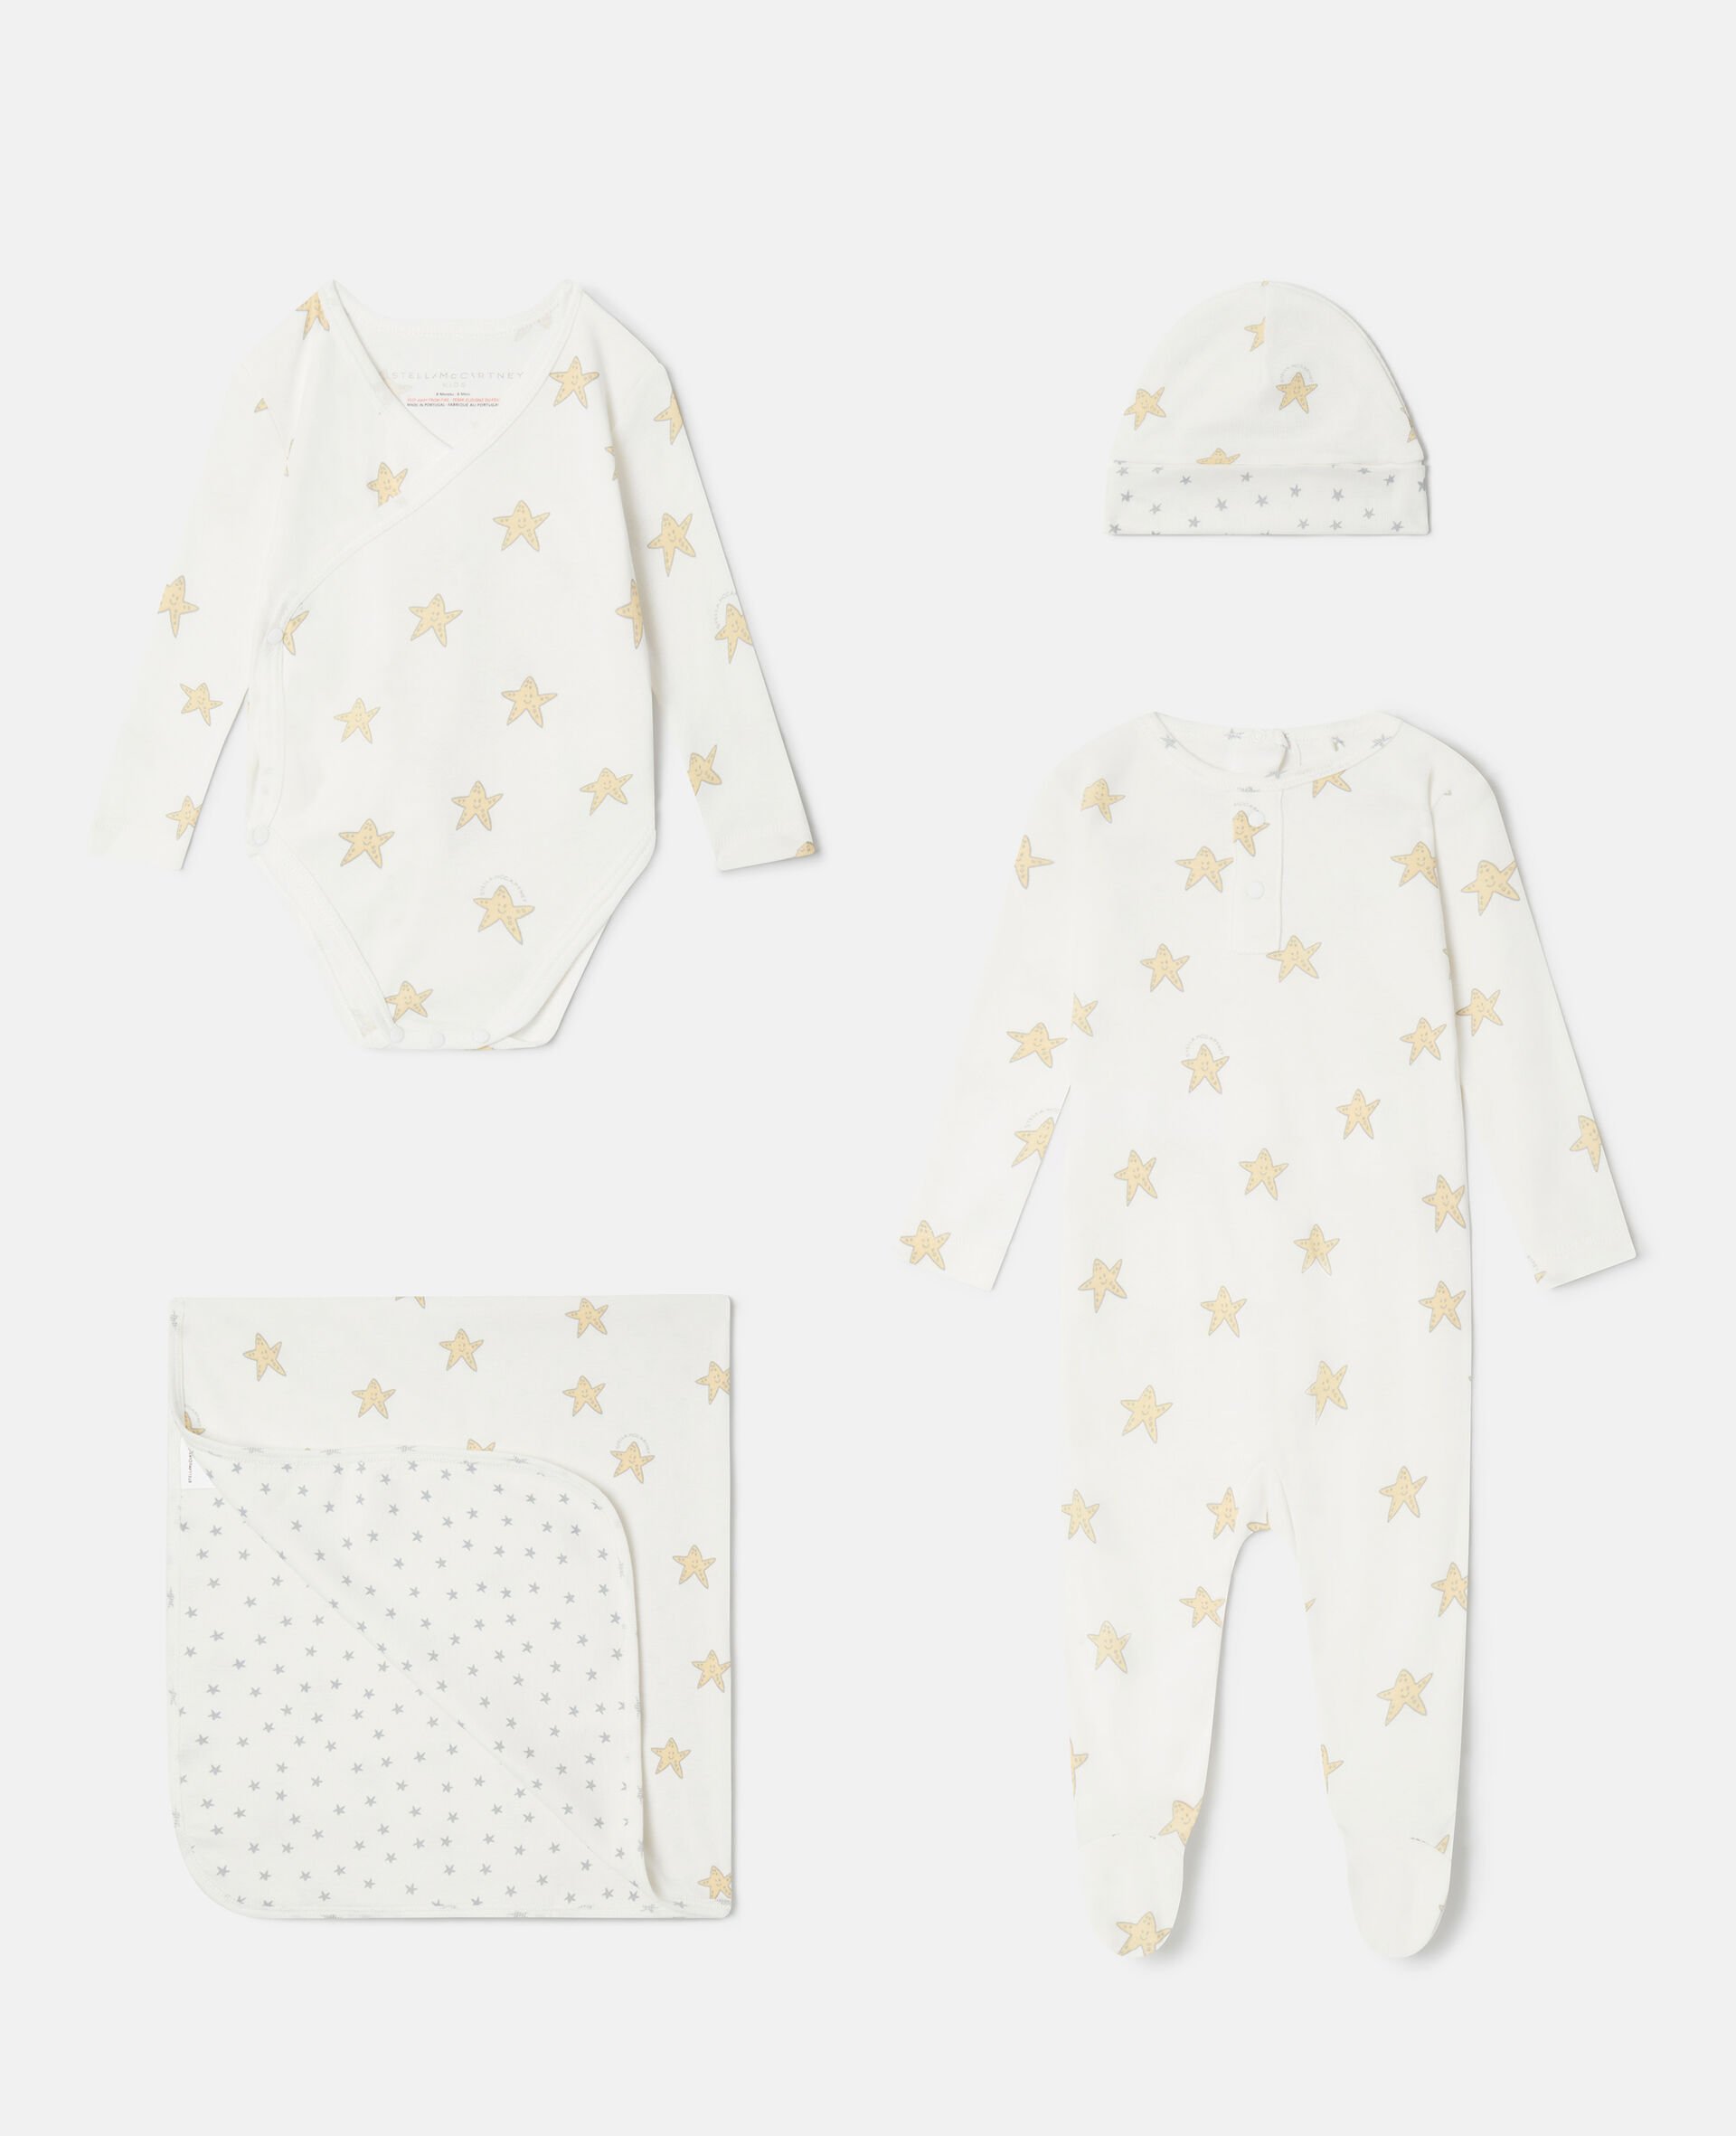 Smiling Stella Star Print Baby Gift Set-Fantaisie-large image number 0